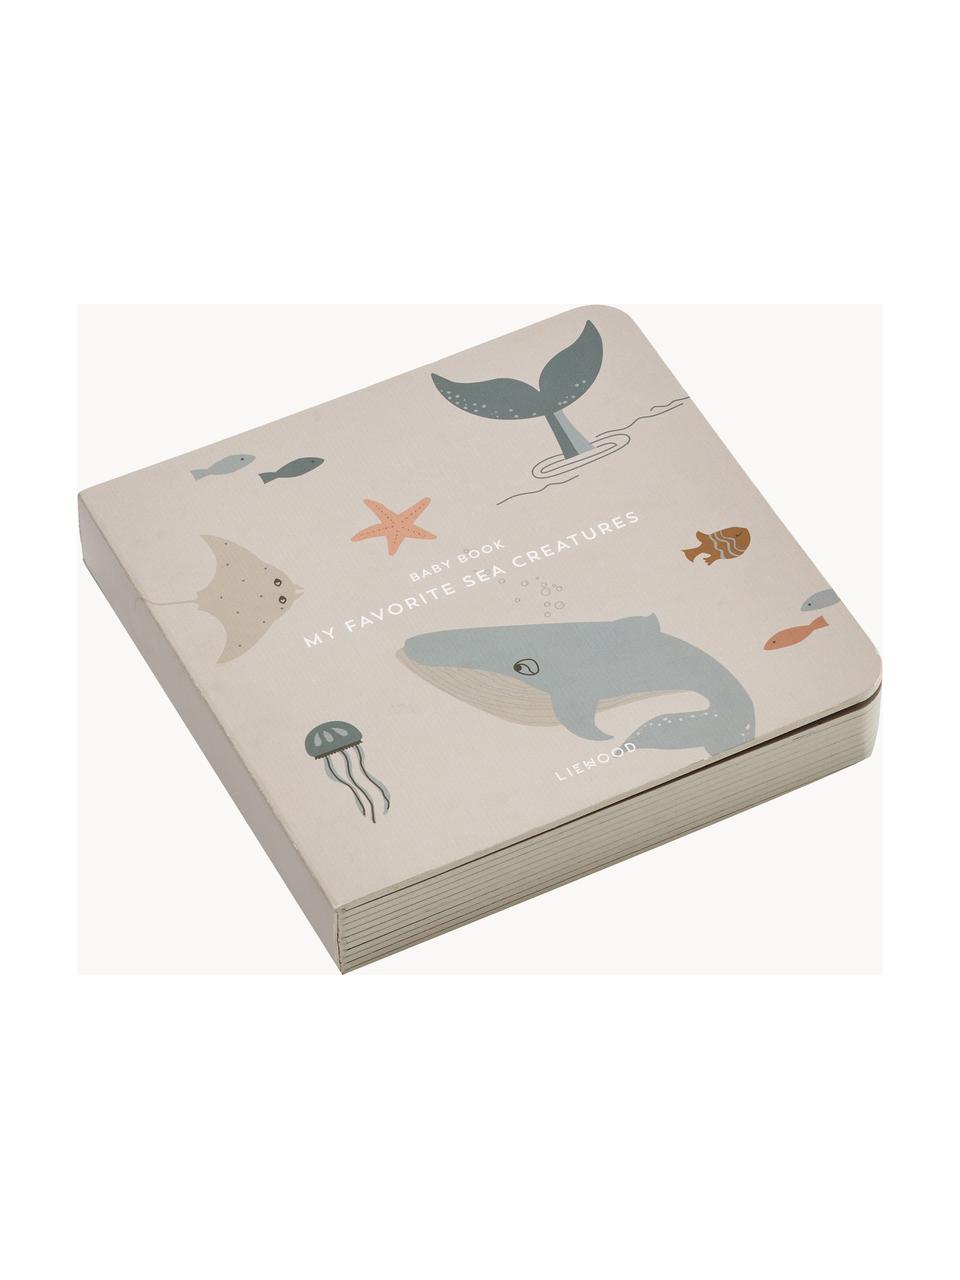 Obrázková knížka pro miminko Bertie, 100 % papír, Motiv moře, Š 12 cm, V 12 cm